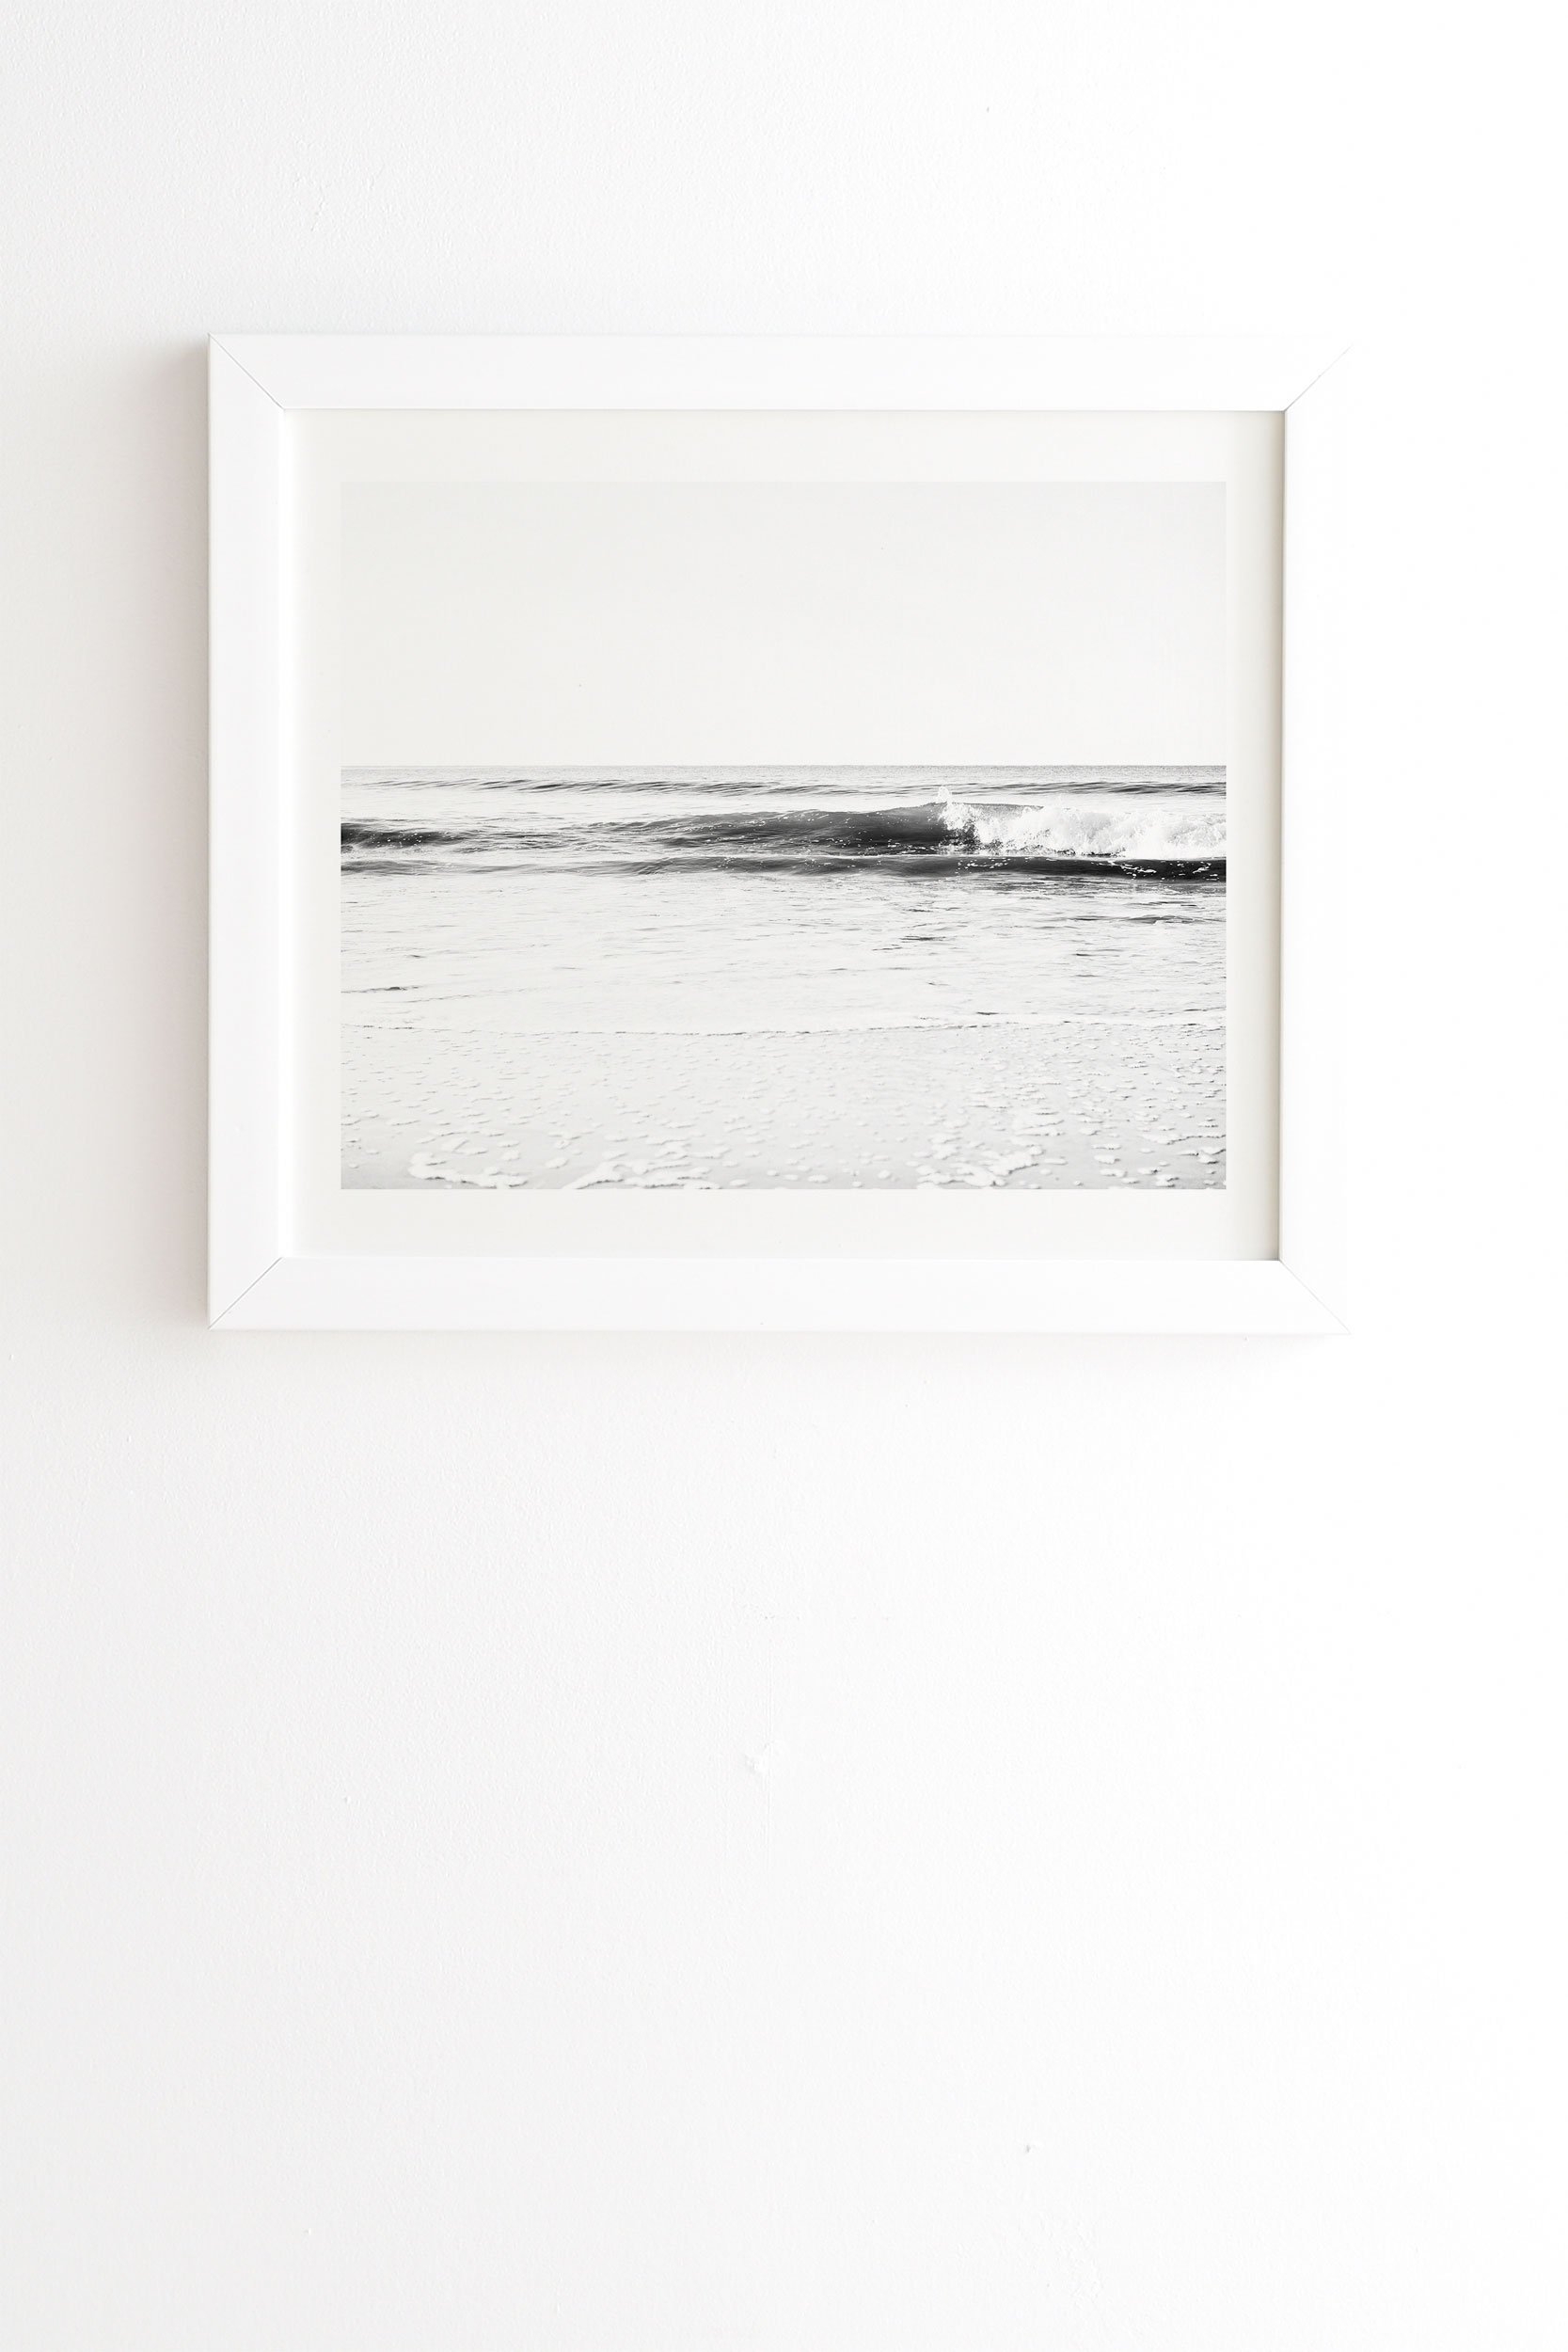 Bree Madden Surf Break White Framed Wall Art - 8" x 9.5" - Image 0